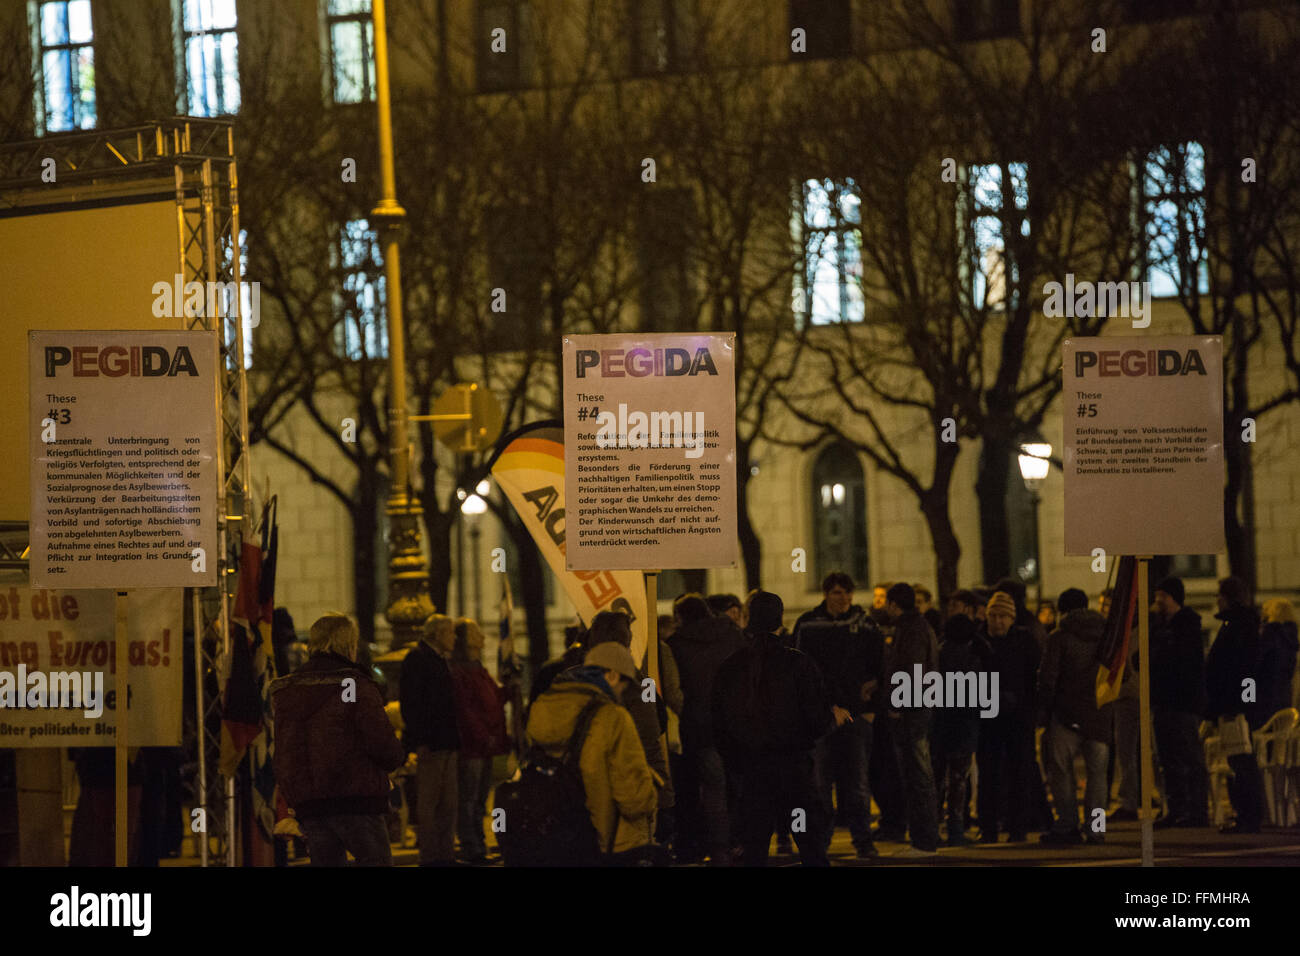 München, Deutschland. 15. Februar 2016. Pegida-Rallye auf dem Odeonsplatz. Bildnachweis: Florian Bengel/Alamy Live-Nachrichten. Stockfoto